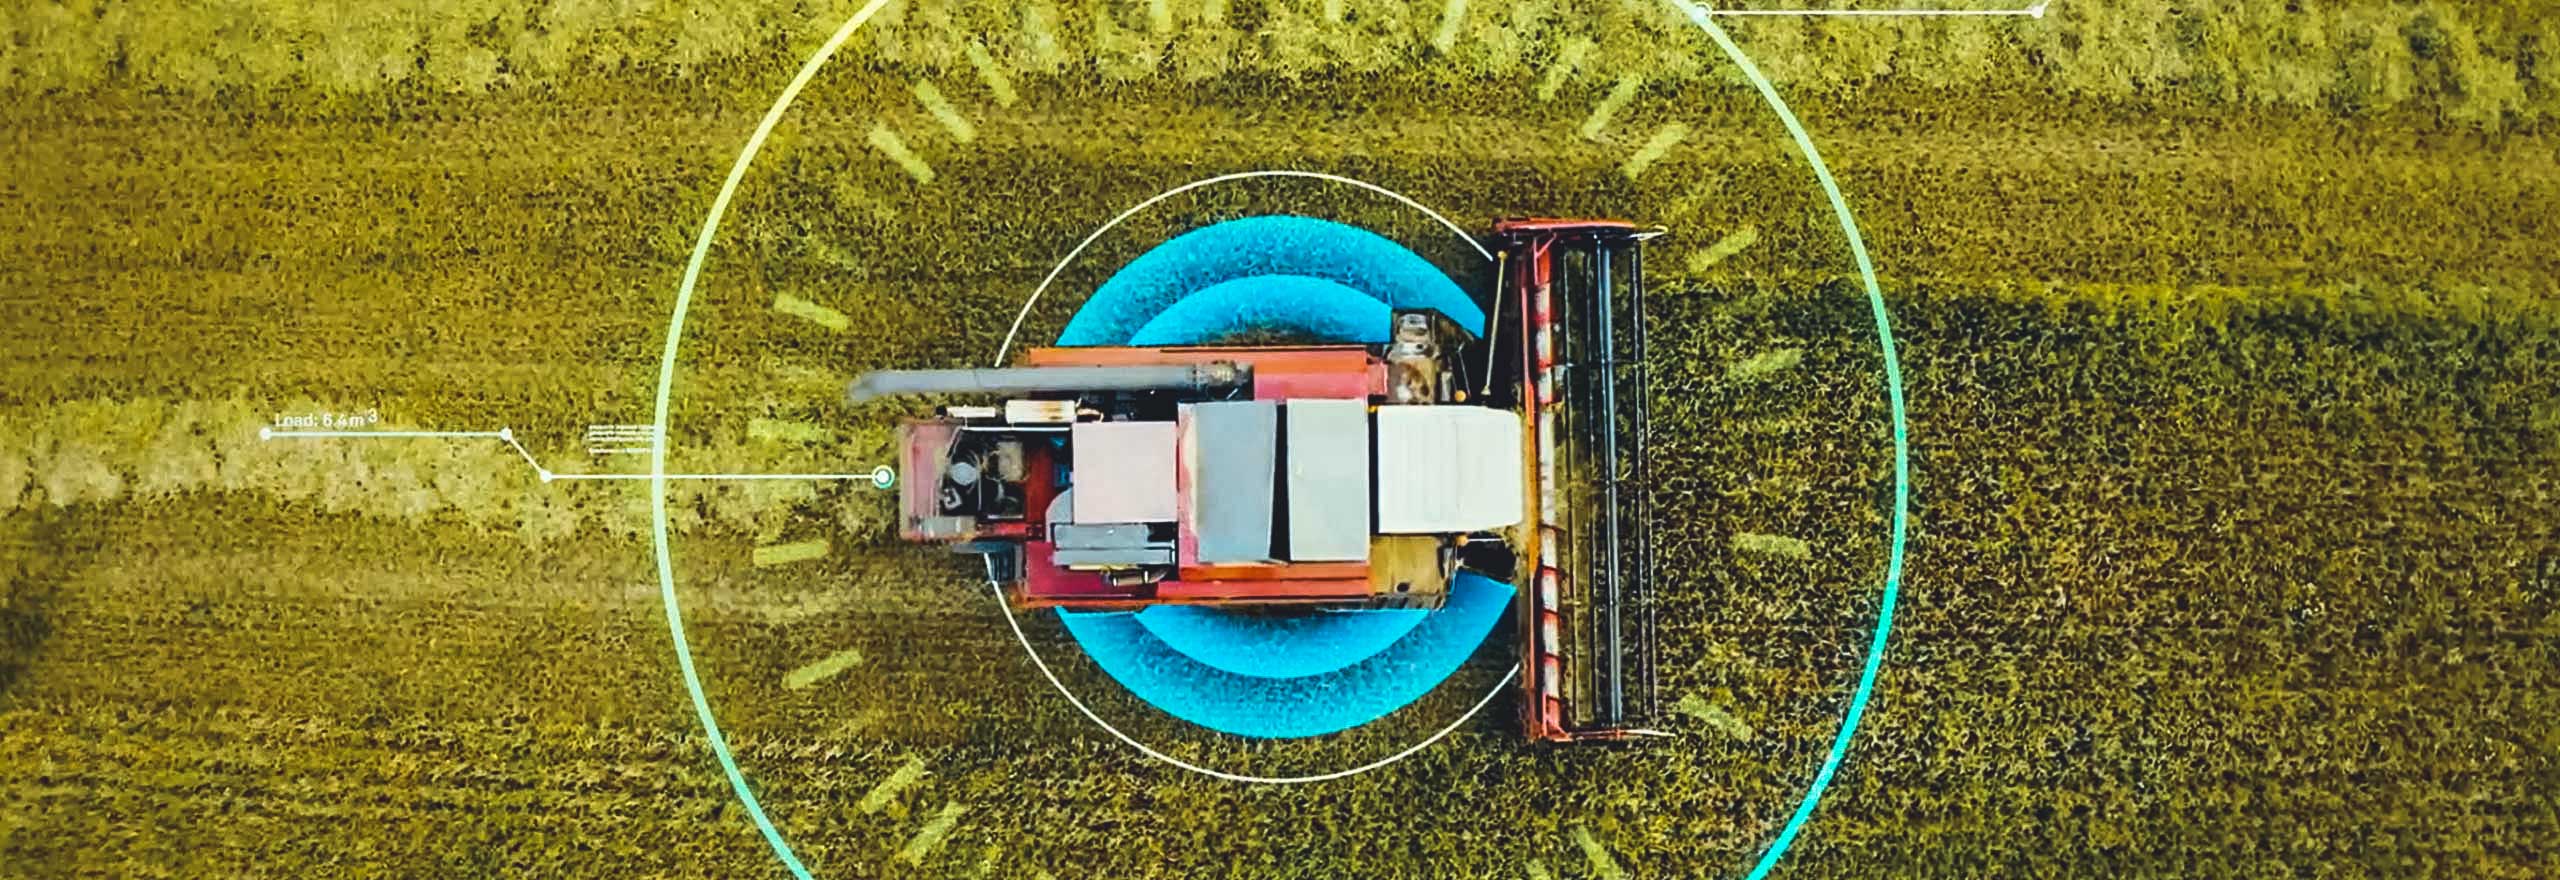 Immagine di un trattore all'interno di un campo sovrapposta a elementi digitali che rappresentano l'agricoltura intelligente